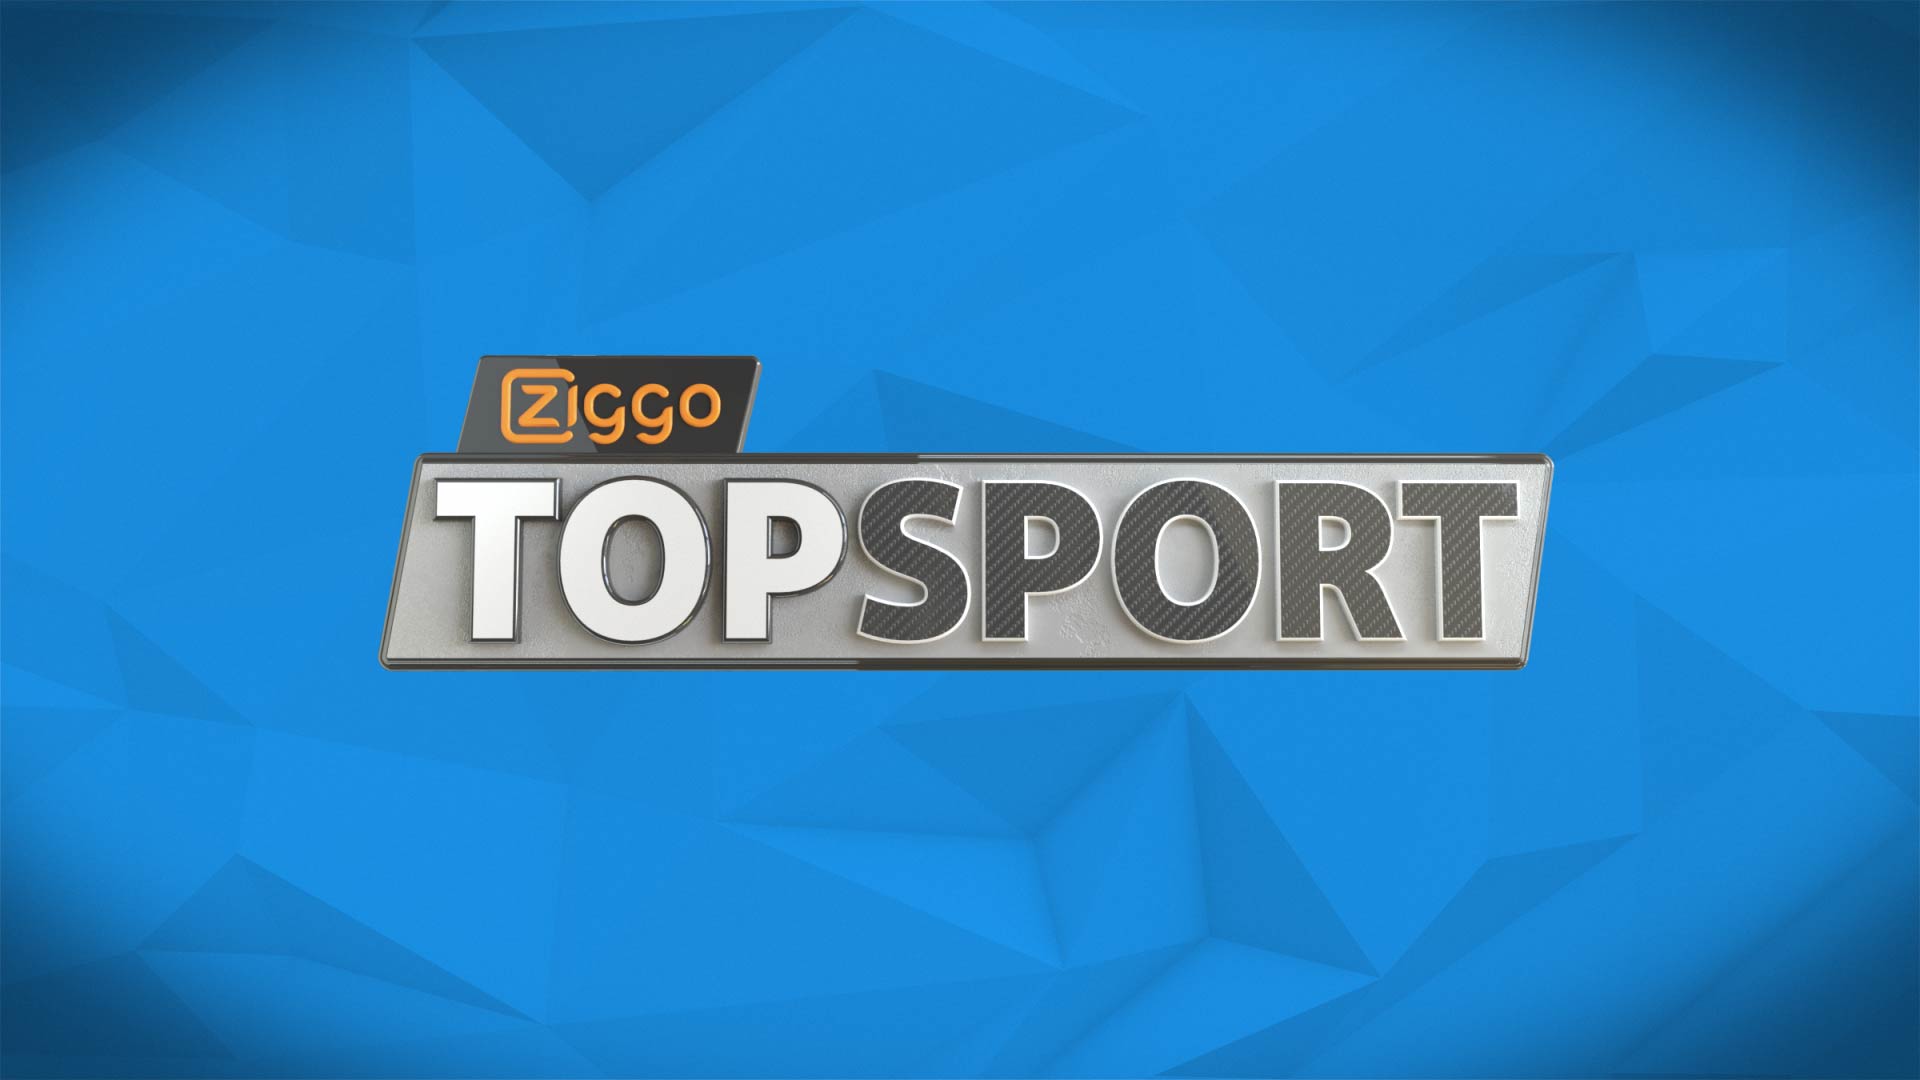 Ziggo Topsport